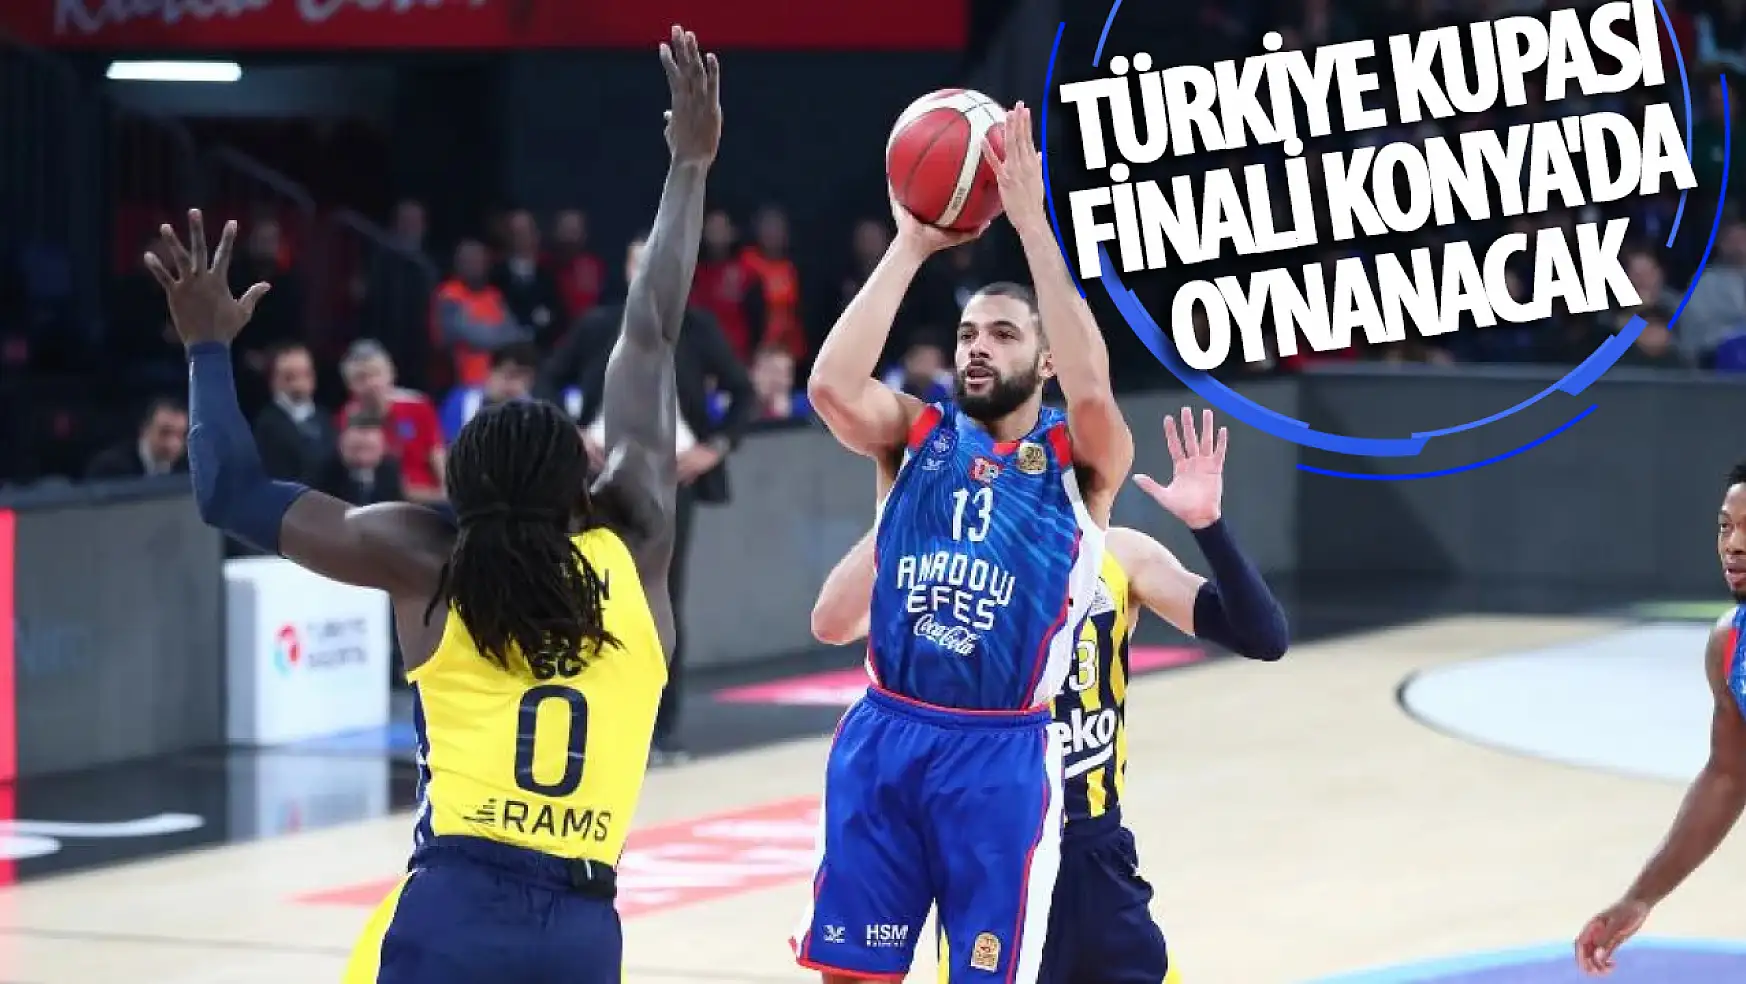 Türkiye Kupası Finali Konya'da  Oynanacak!